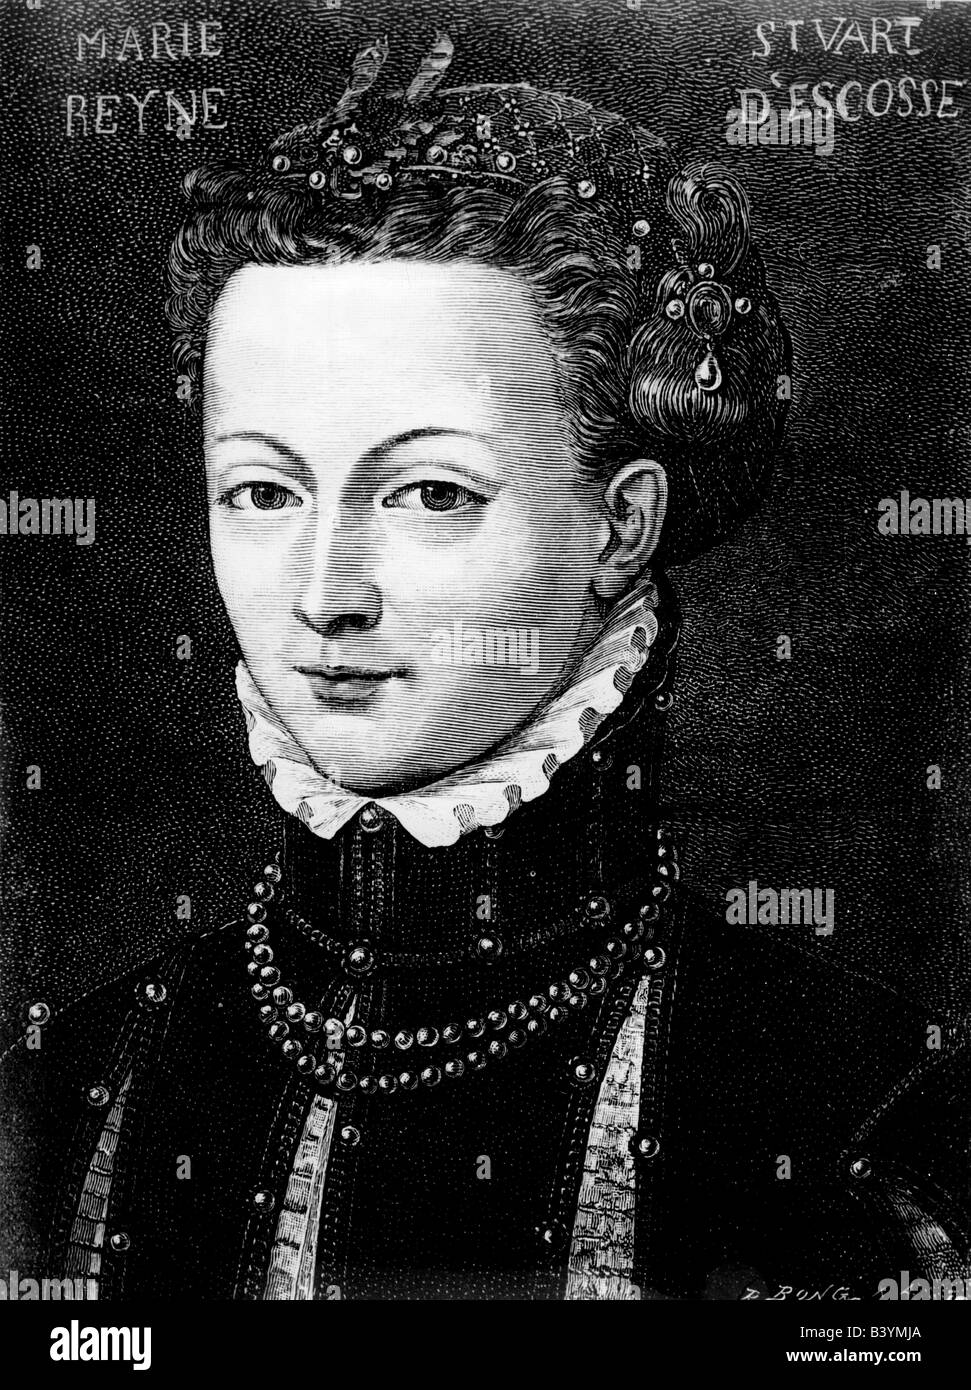 Marie, Reine des Écossais, 8.12.1542 - 8.2.1587, l'artiste n'a pas d'auteur pour être effacé Banque D'Images